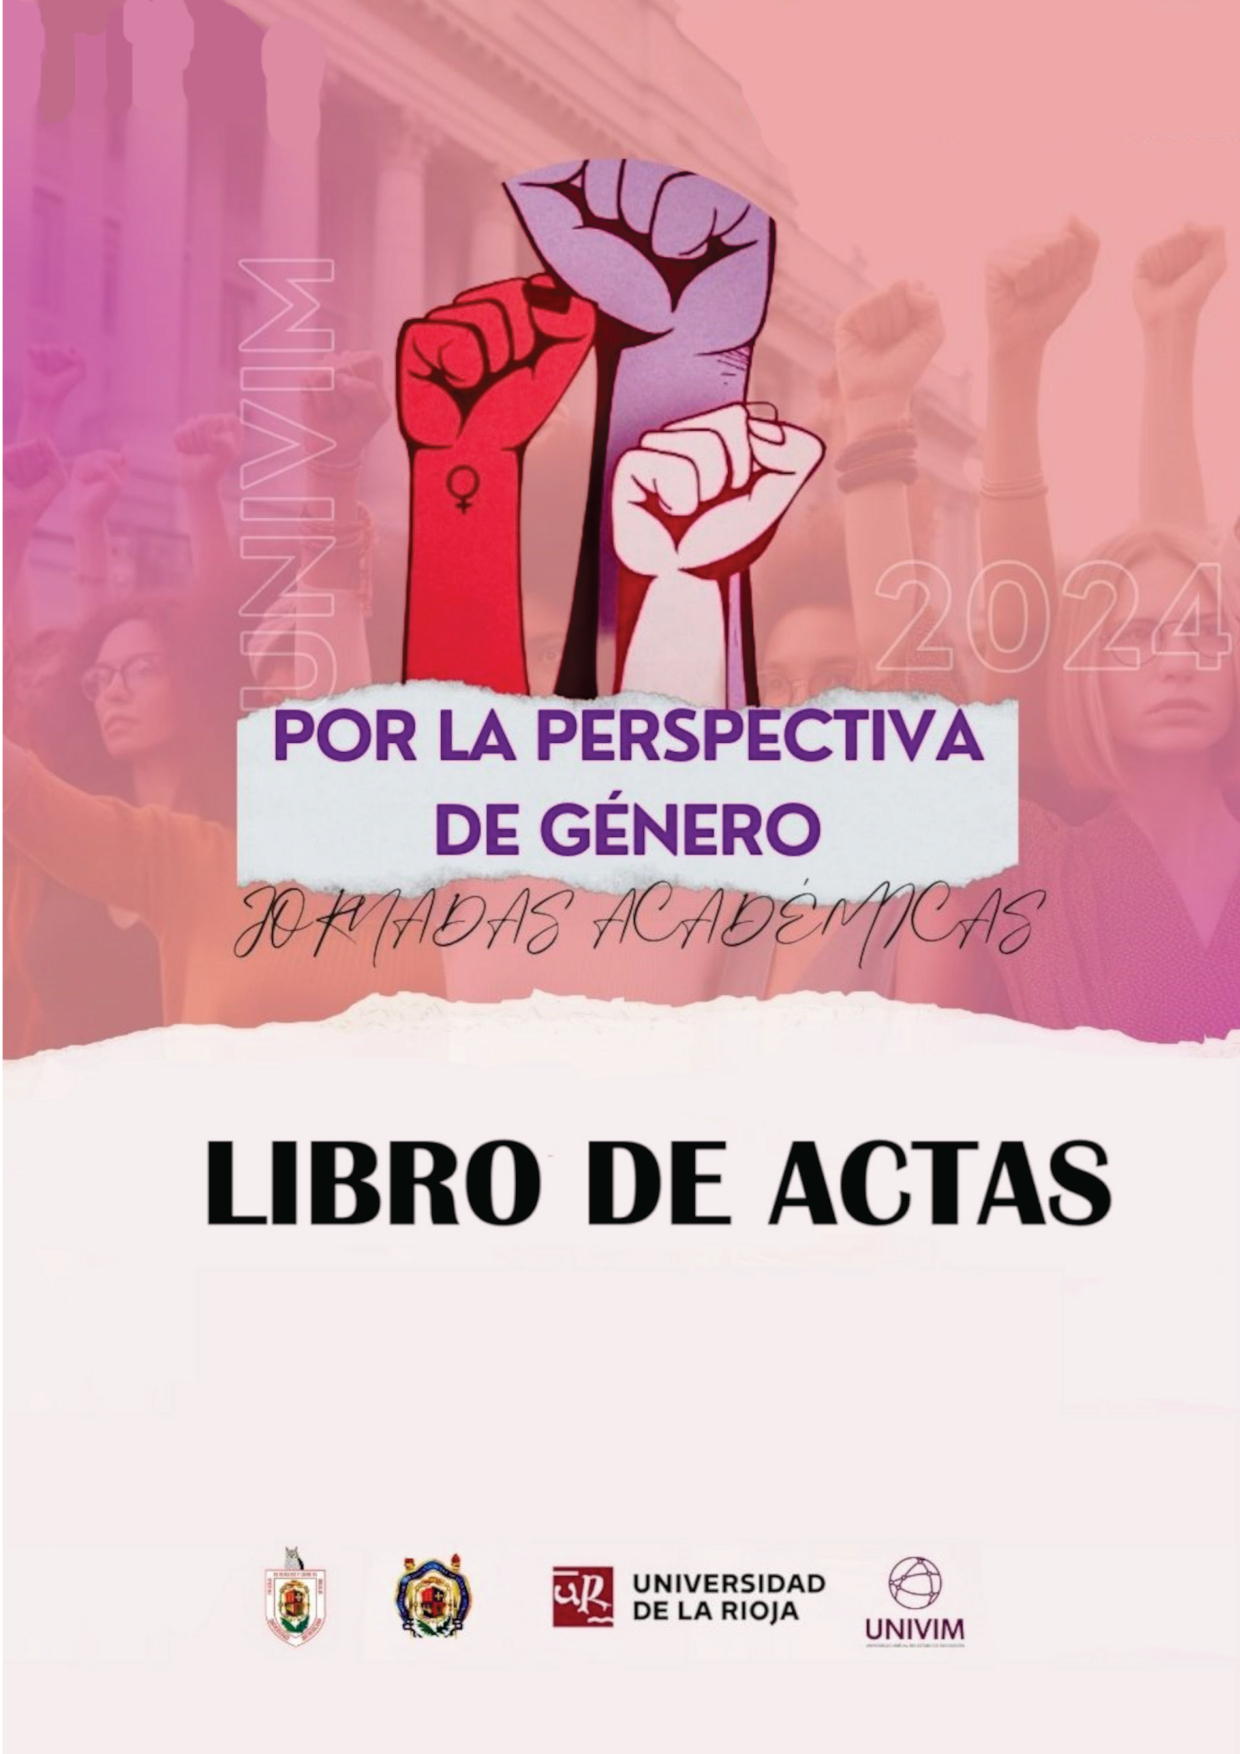 Imagen de portada del libro Jornadas académicas Por la Perspectiva de Género